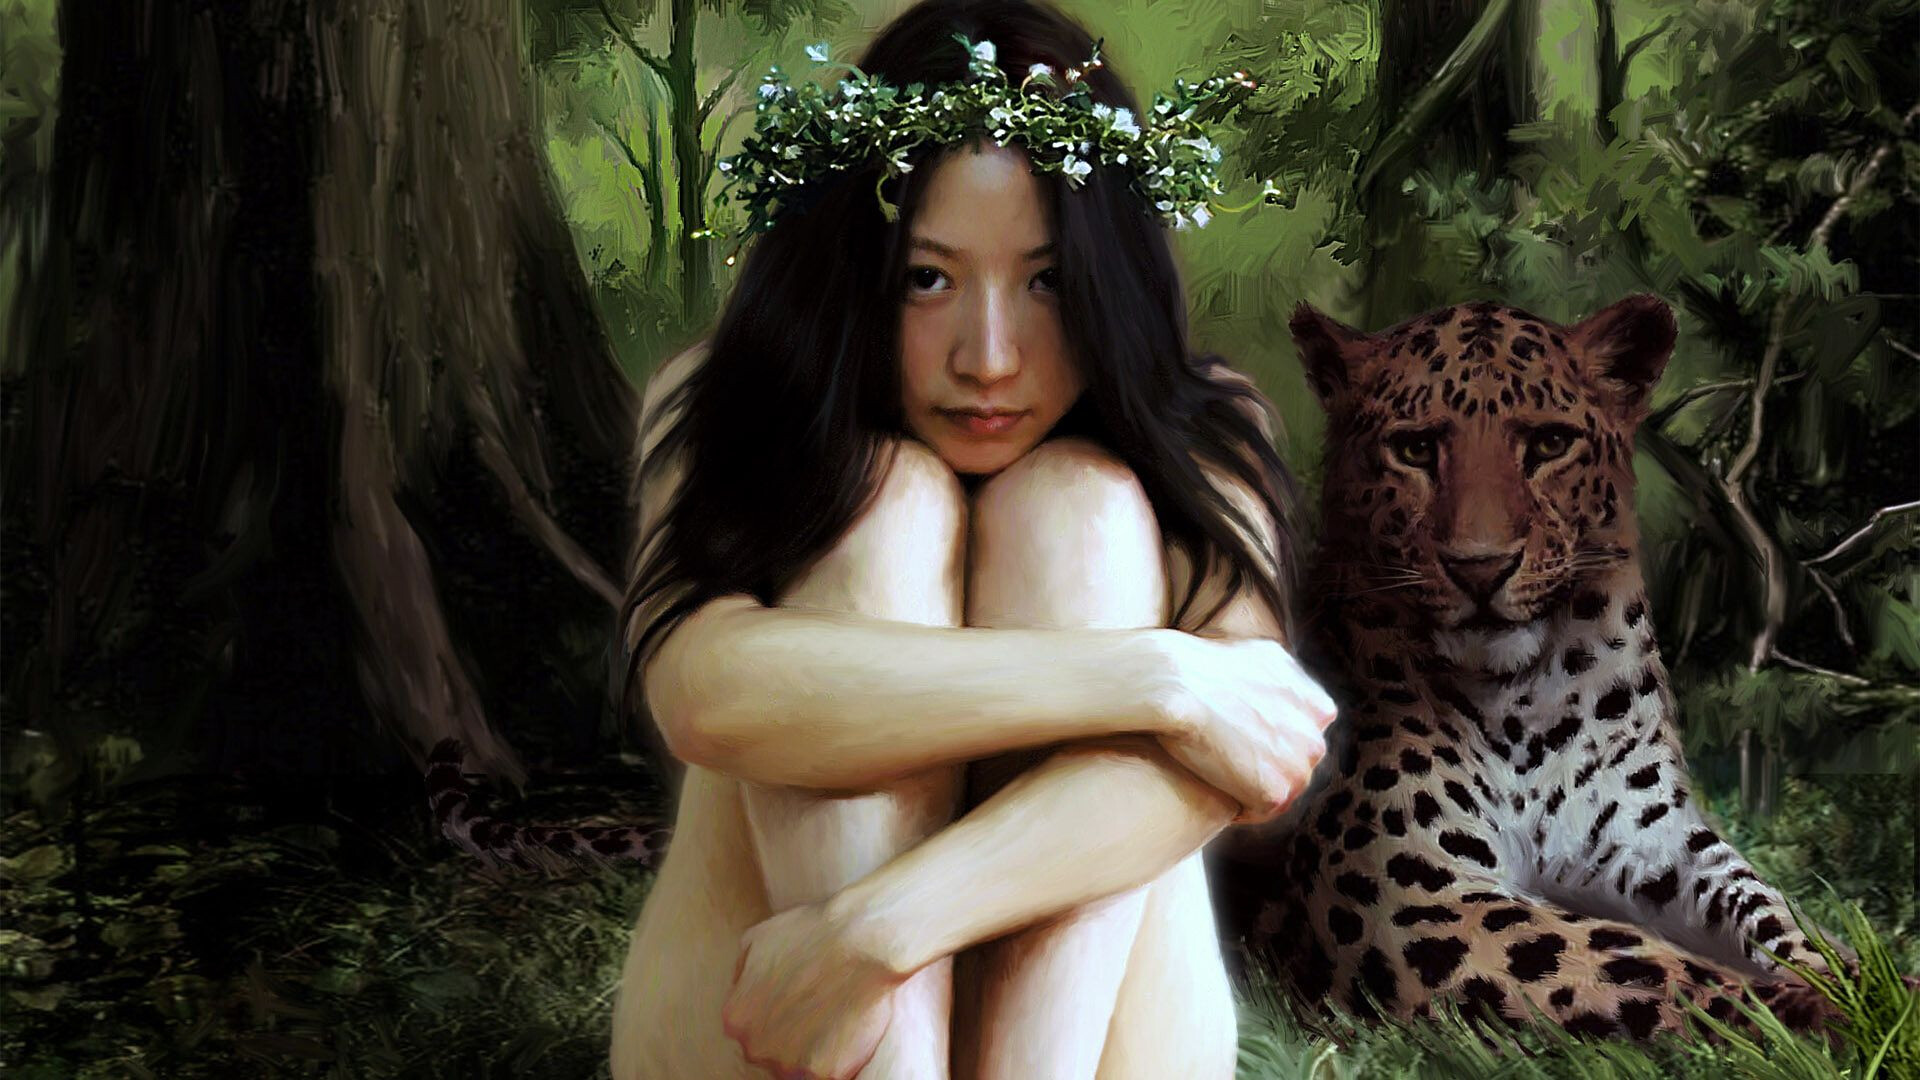 Asian fantasy girl - Real Naked Girls